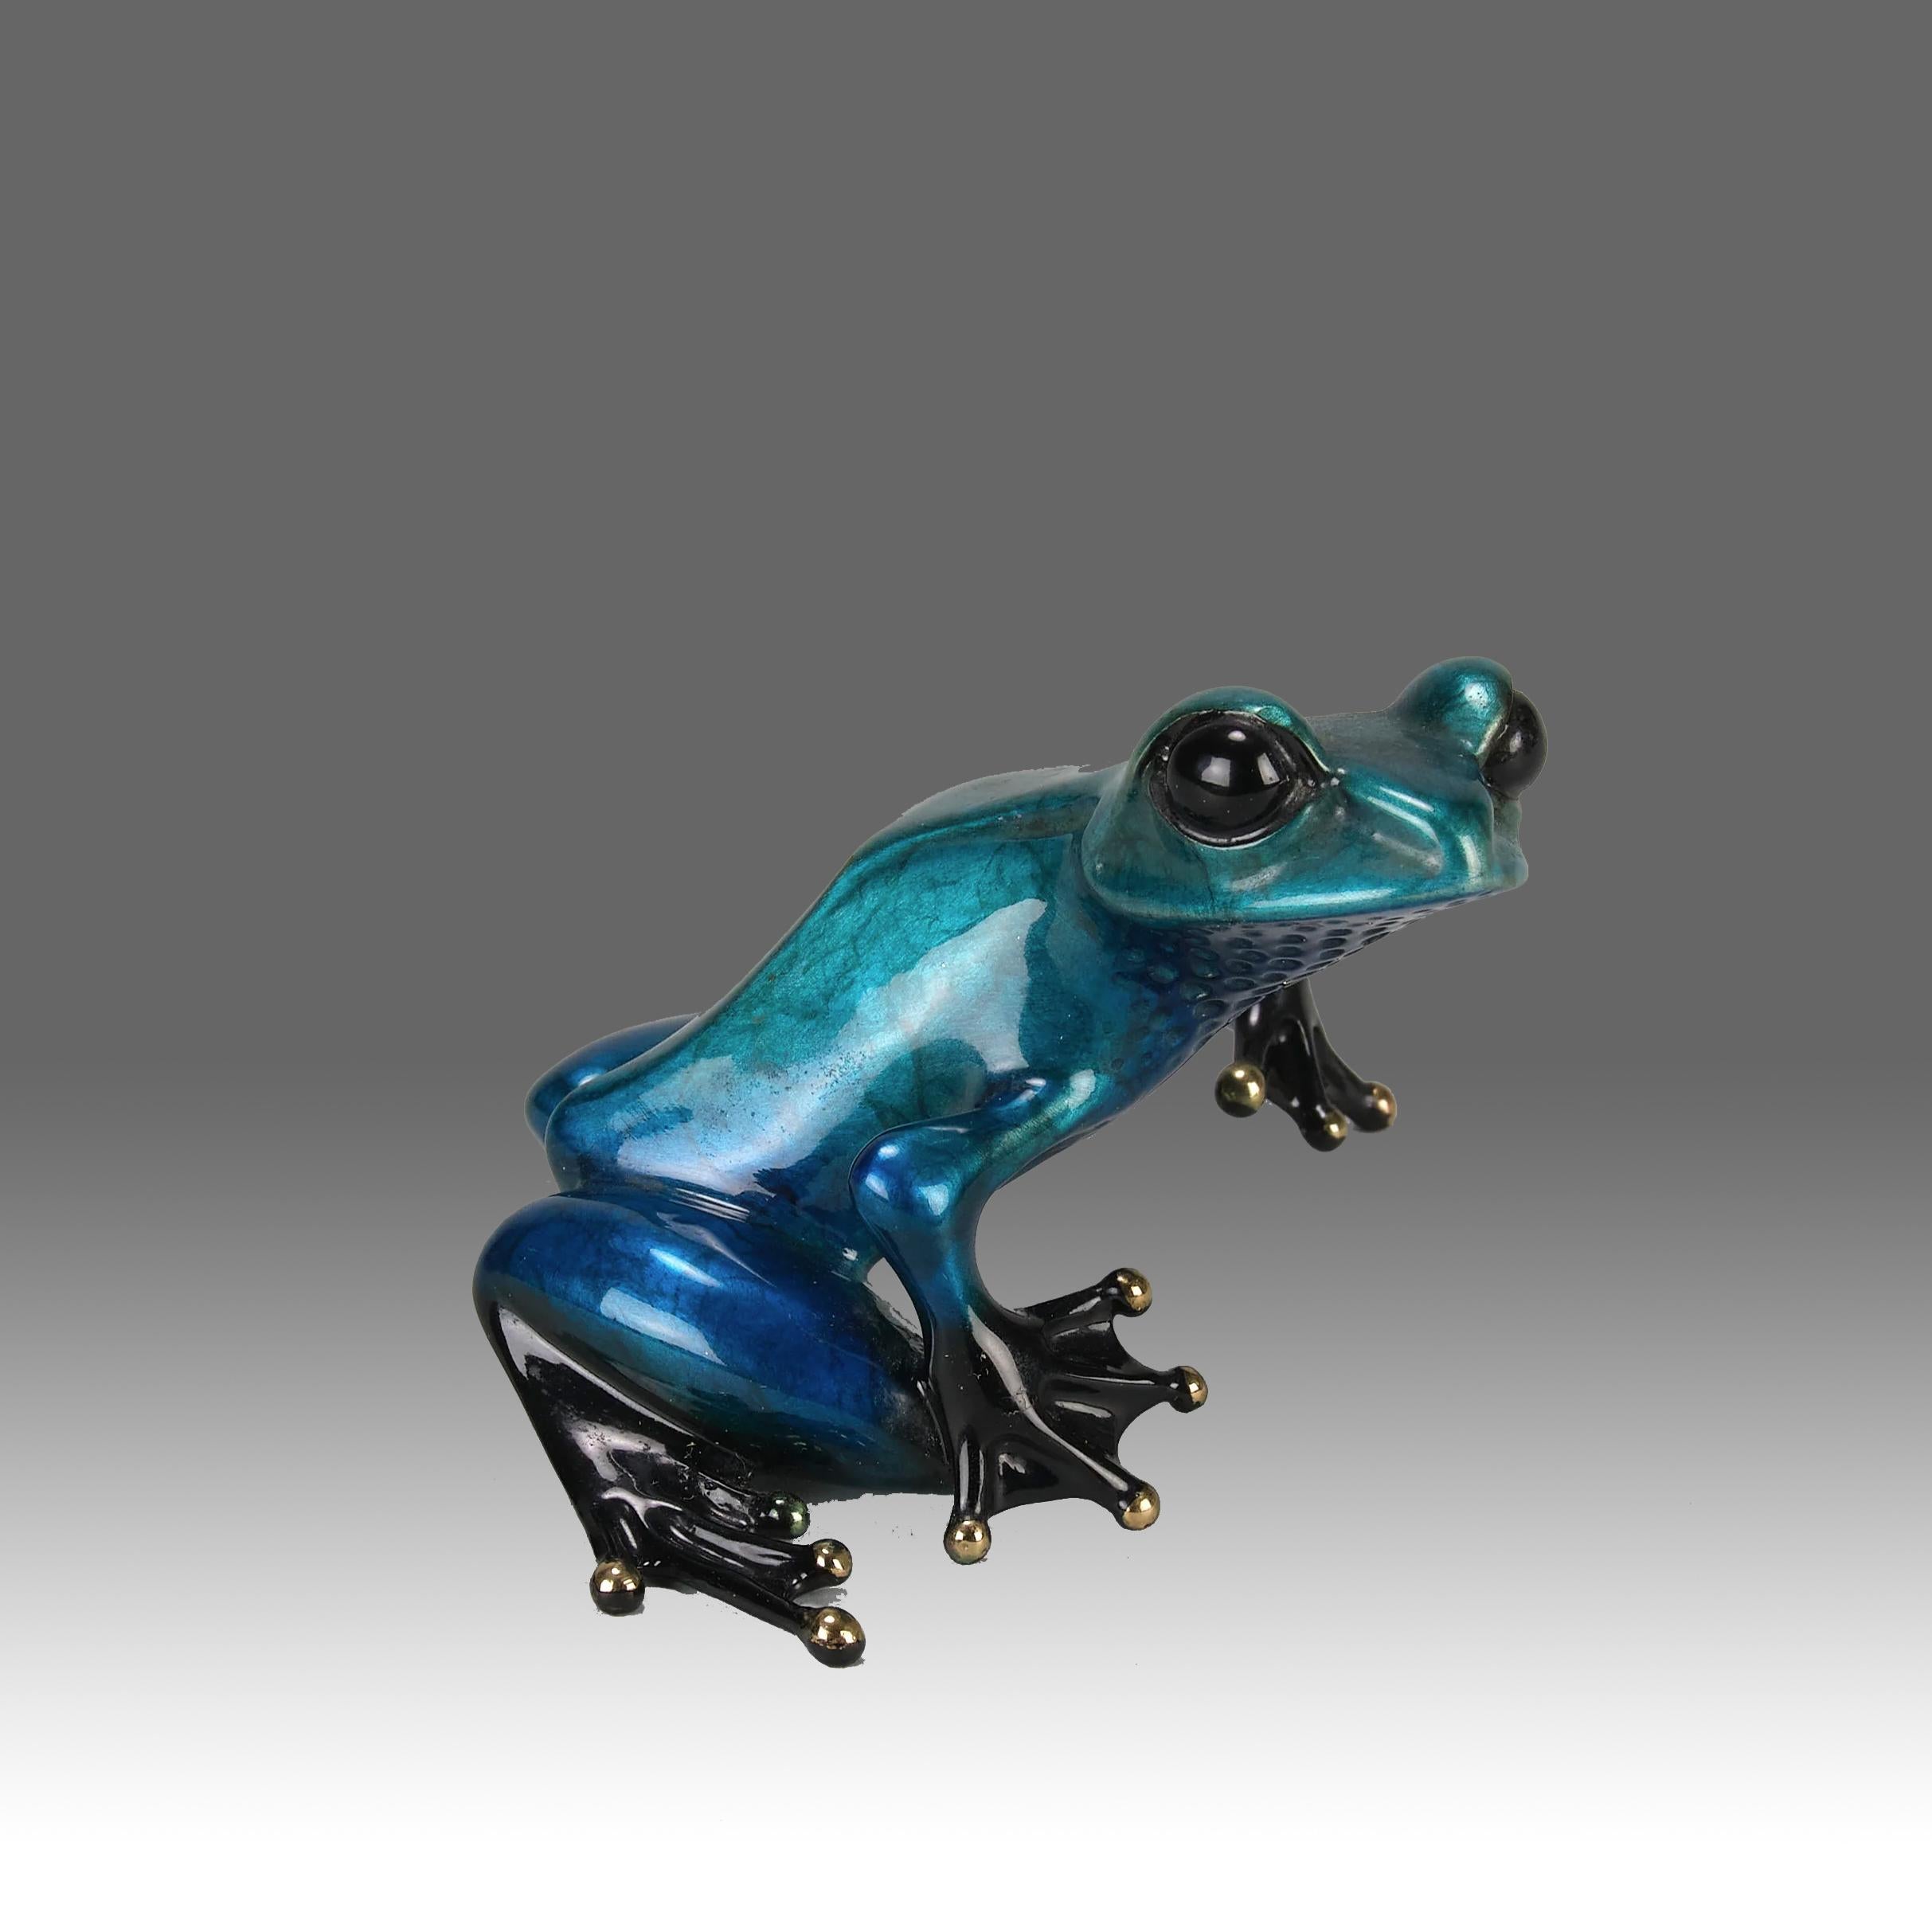 Eine attraktive Bronzestudie in limitierter Auflage eines blau-metallischen Frosches in sitzender Position mit erhobenem Kopf, mit sehr feinen Emailfarben und ausgezeichneter Oberfläche, signiert Tim, gestempelt 'Frogman' und nummeriert 1114/2000